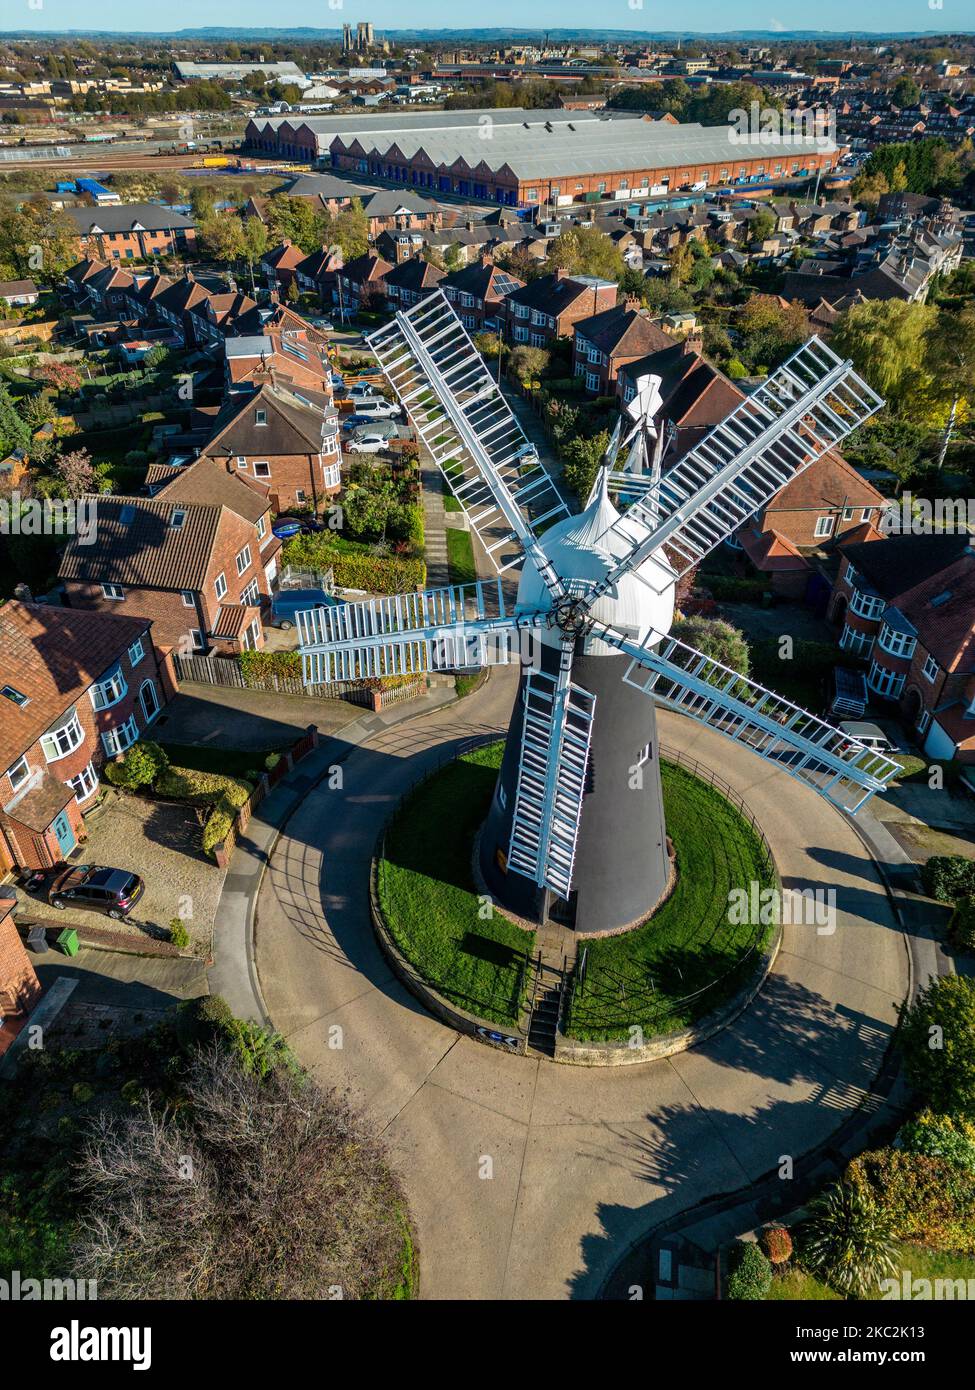 Holgate Windmill dans la ville de York au Royaume-Uni. Construit en 1770. Après la restauration, l'usine est maintenant en état de fonctionnement complet. York Minster Banque D'Images